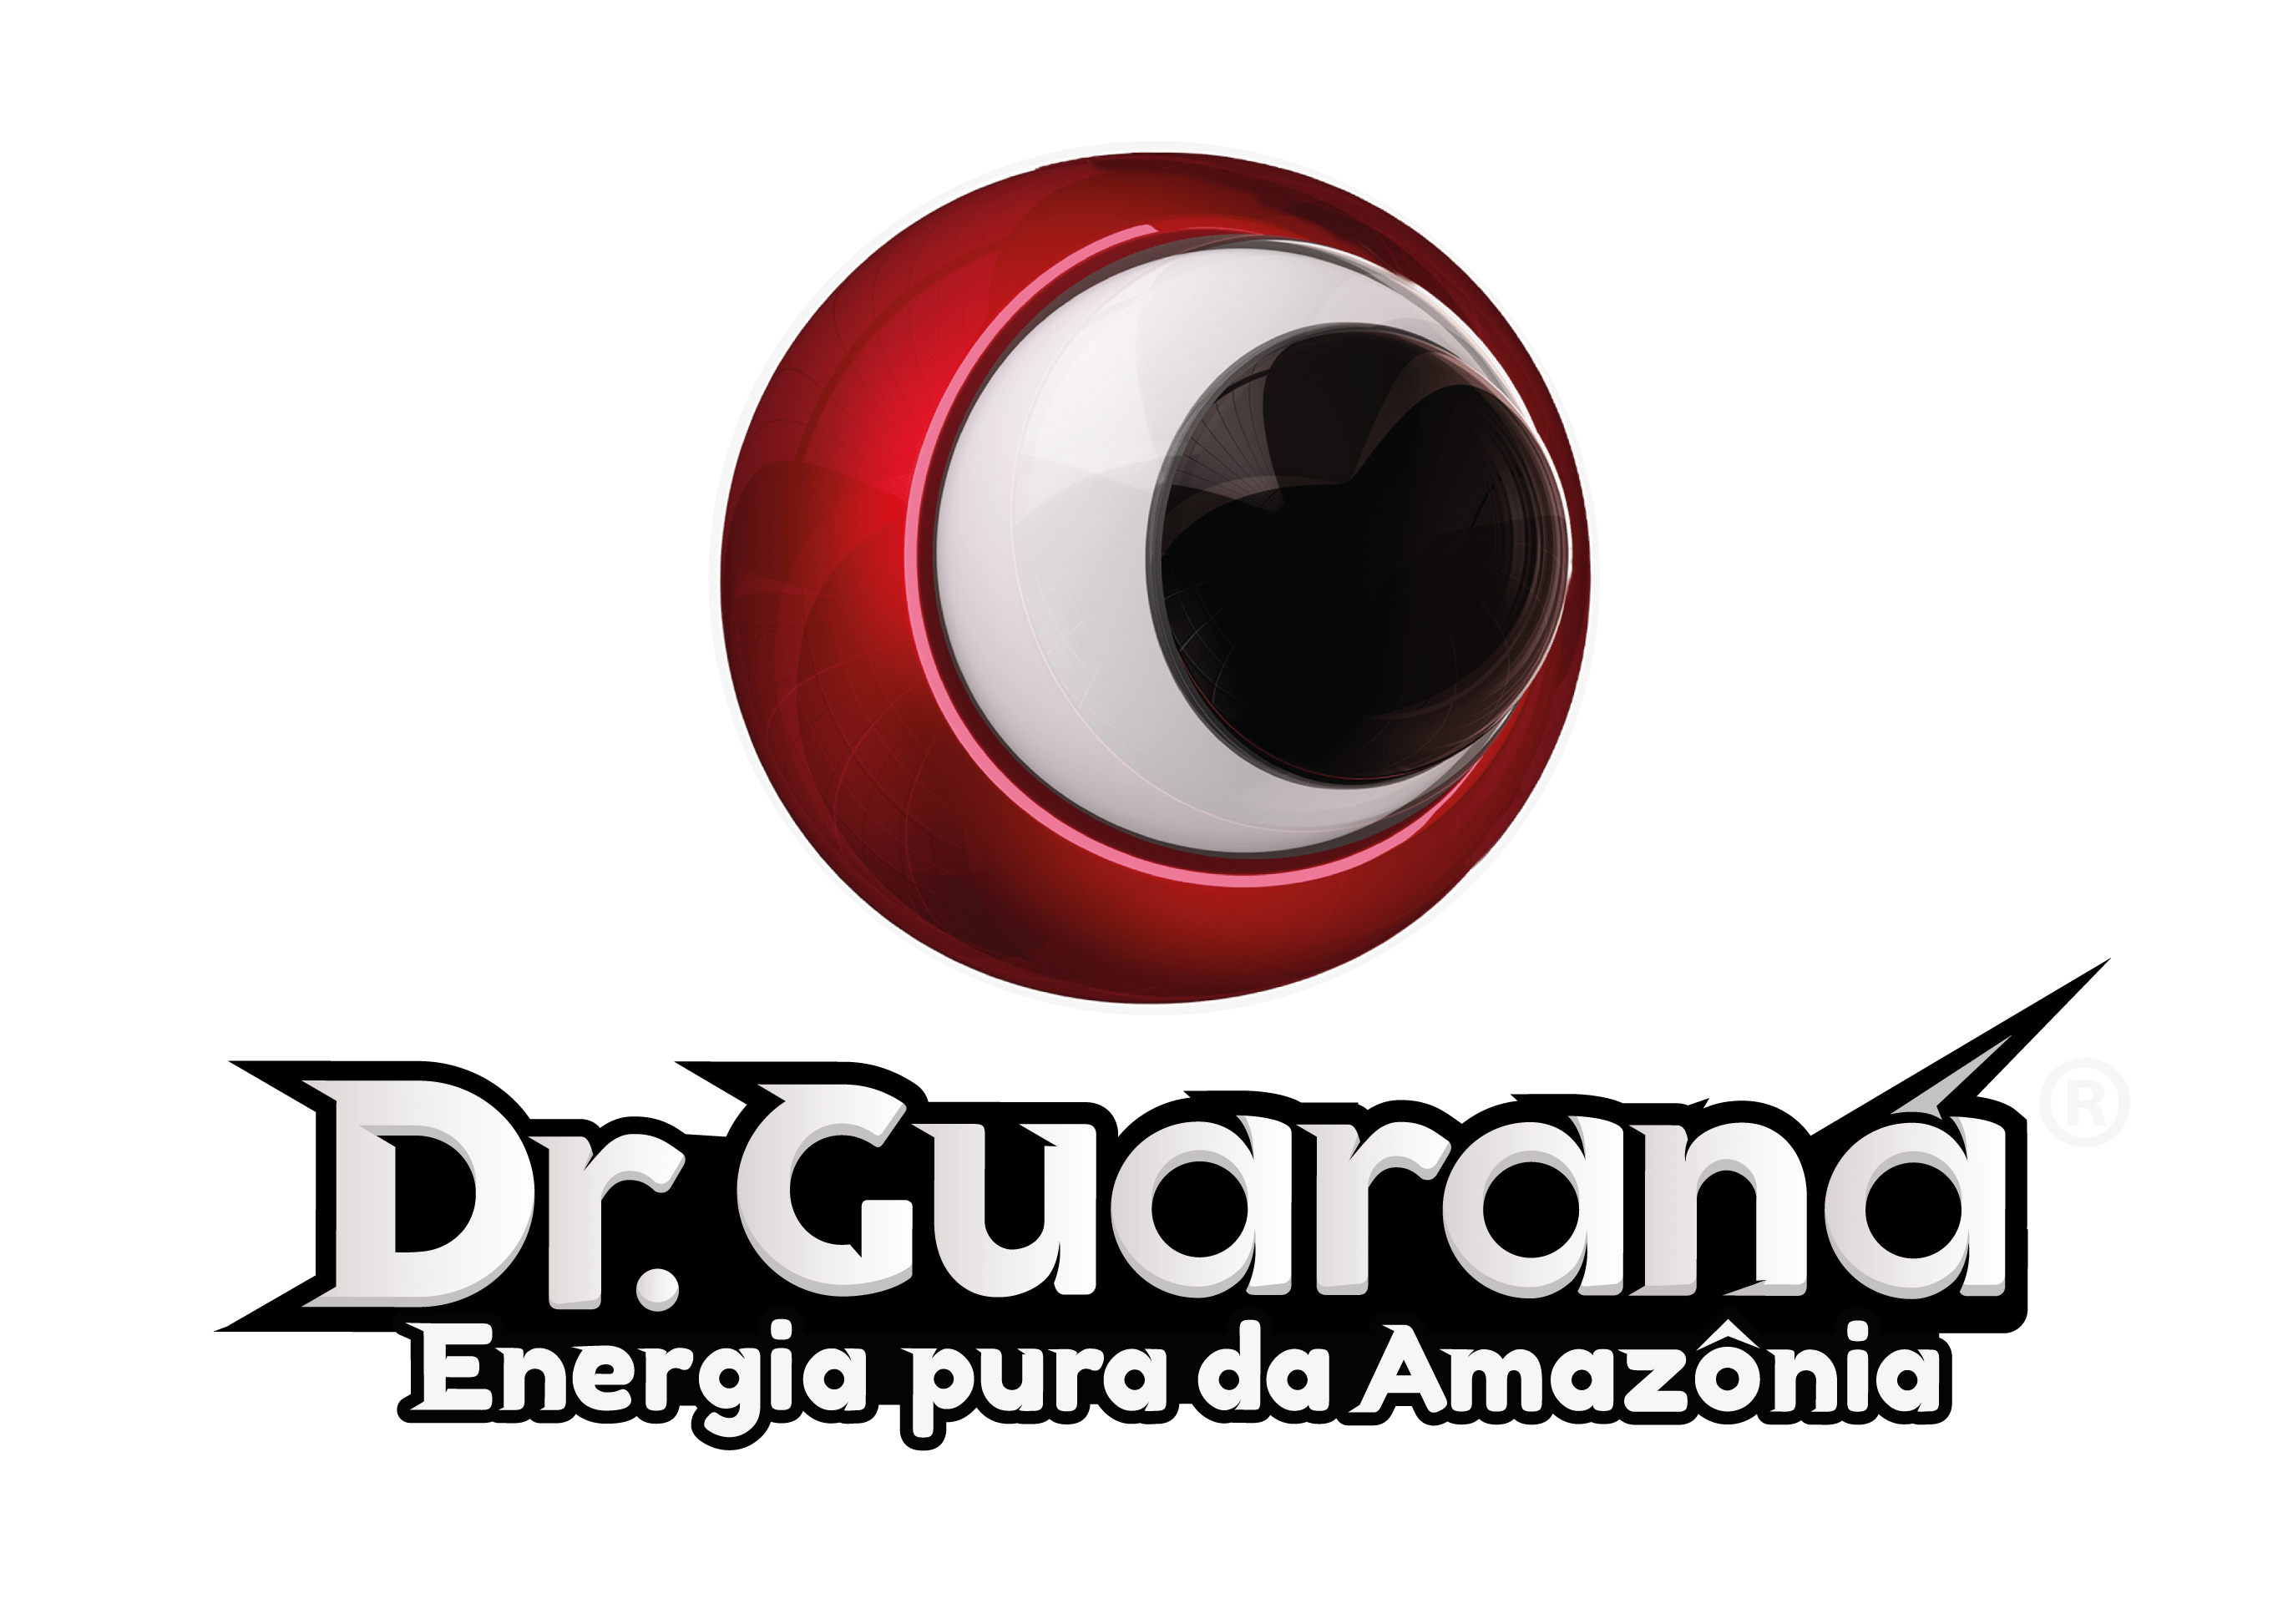 Dr. Guaraná